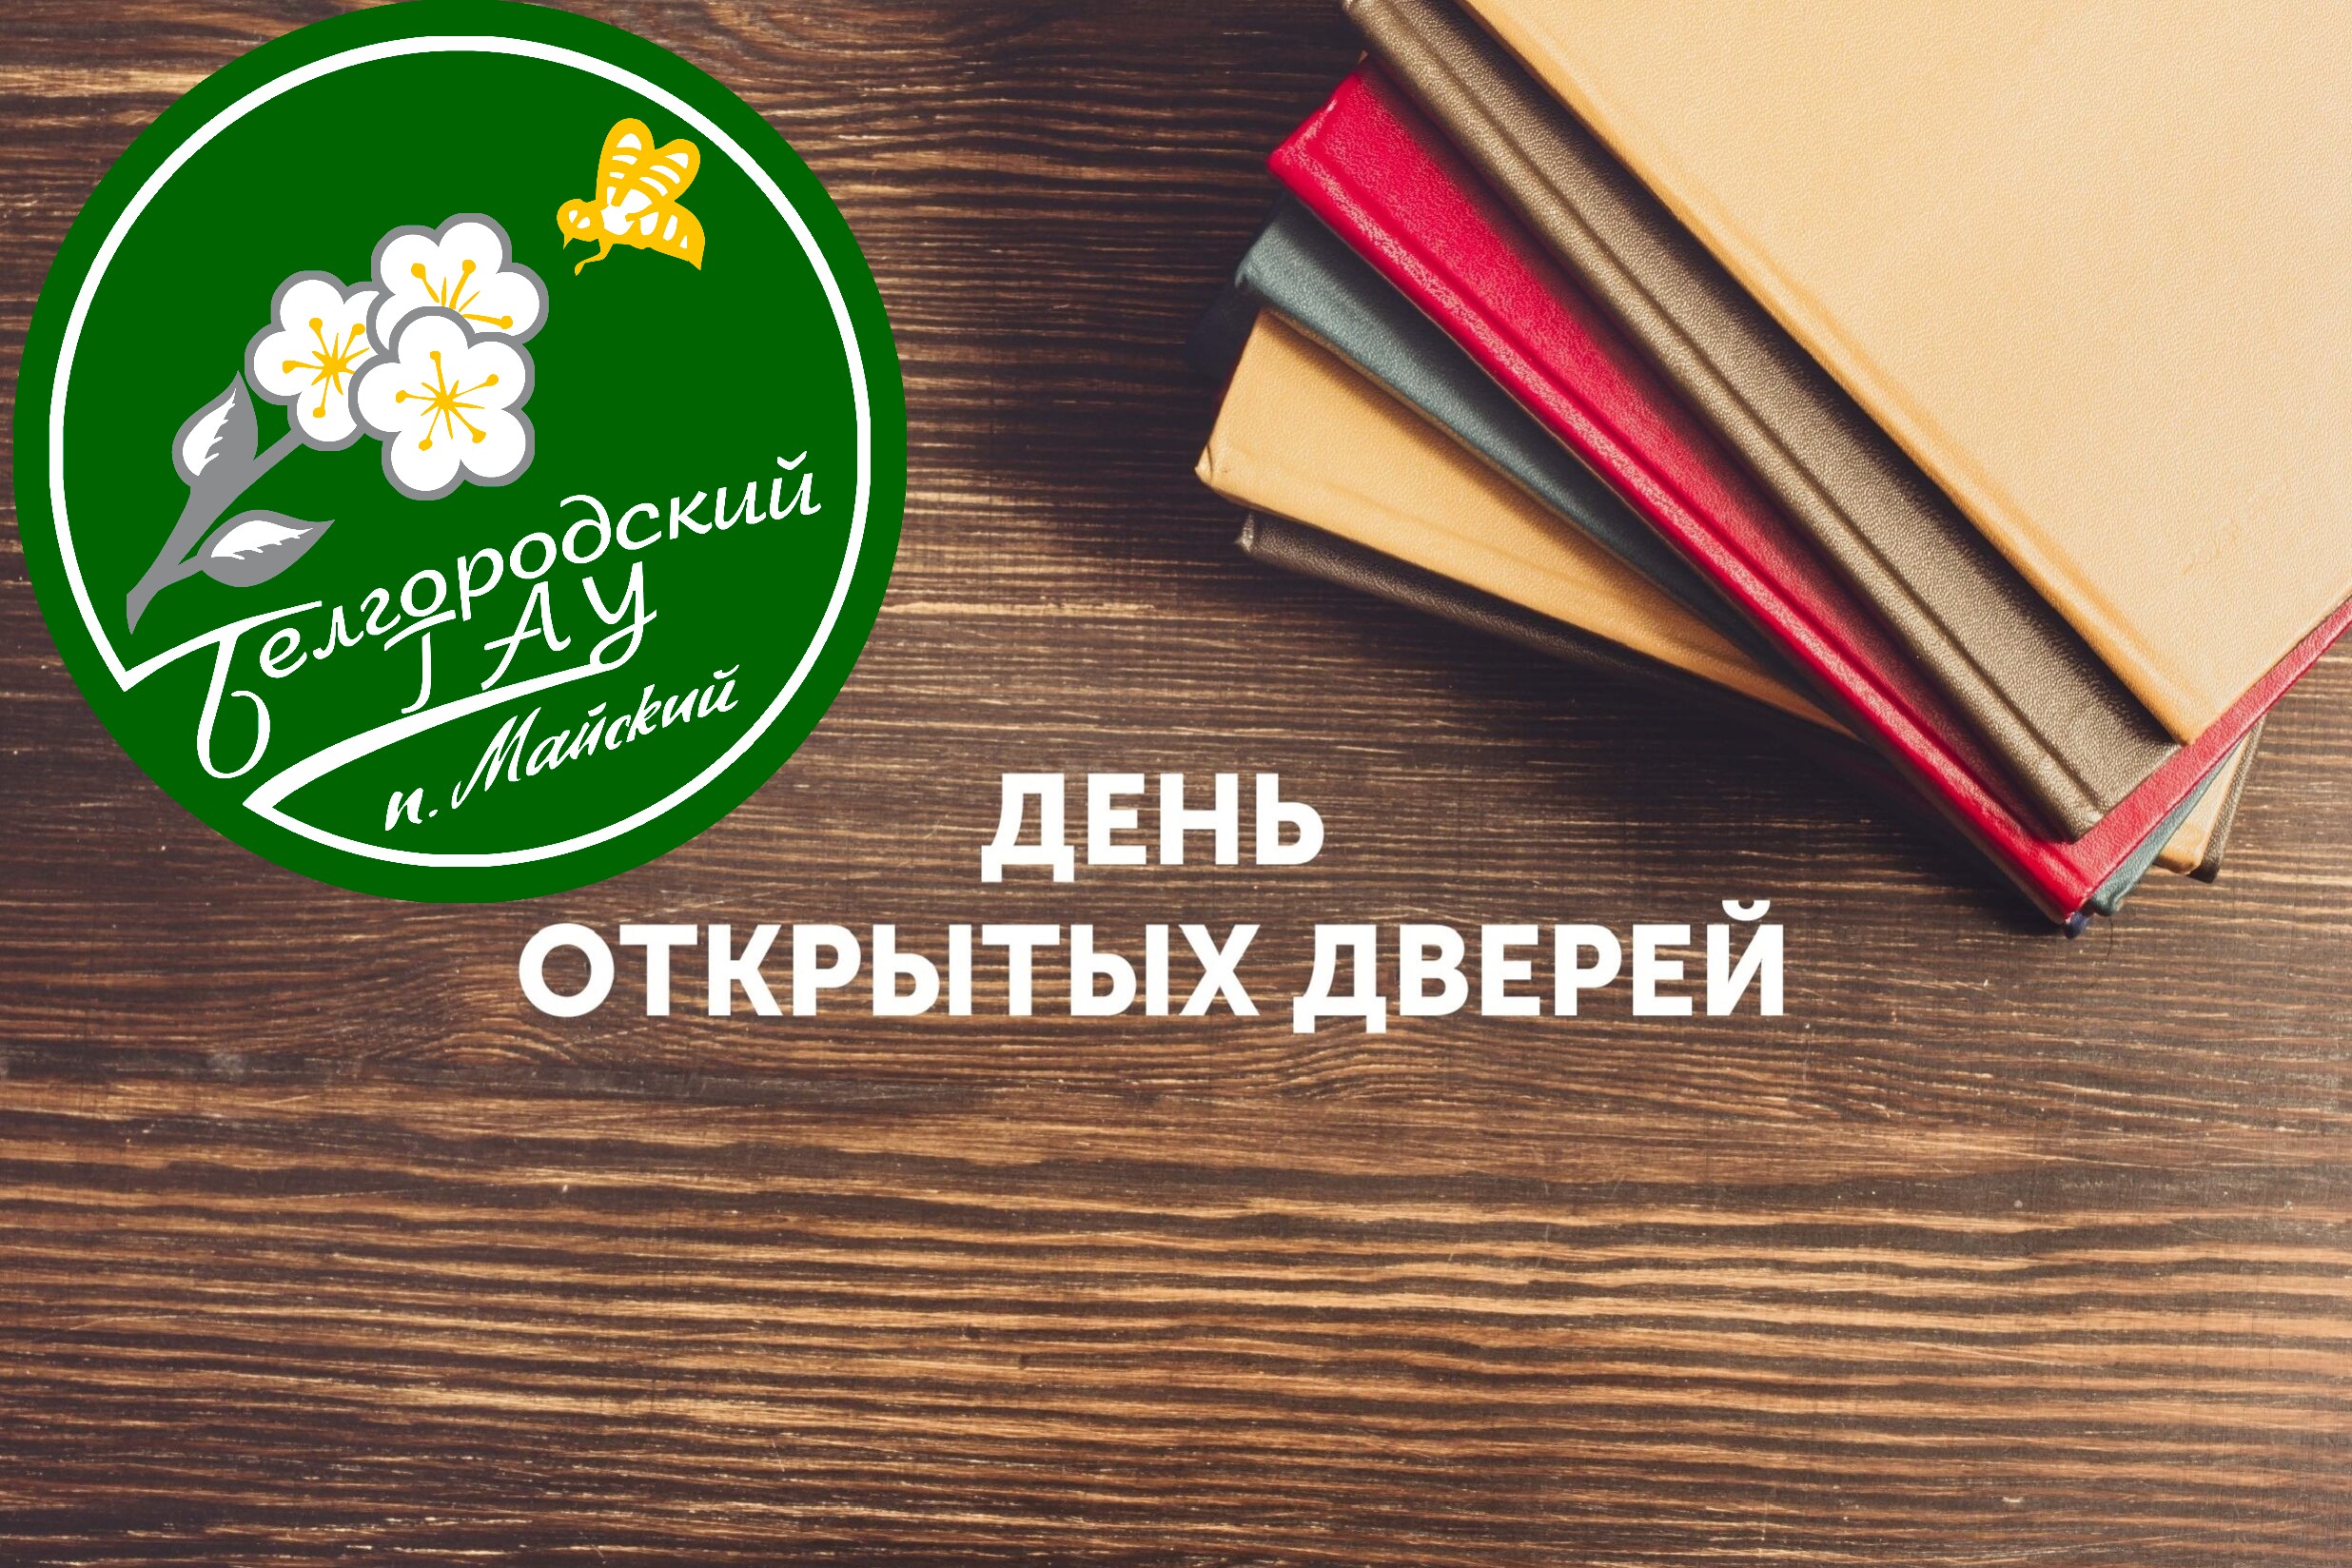 Белгородский государственный аграрный университет приглашает вас на День открытых дверей!.